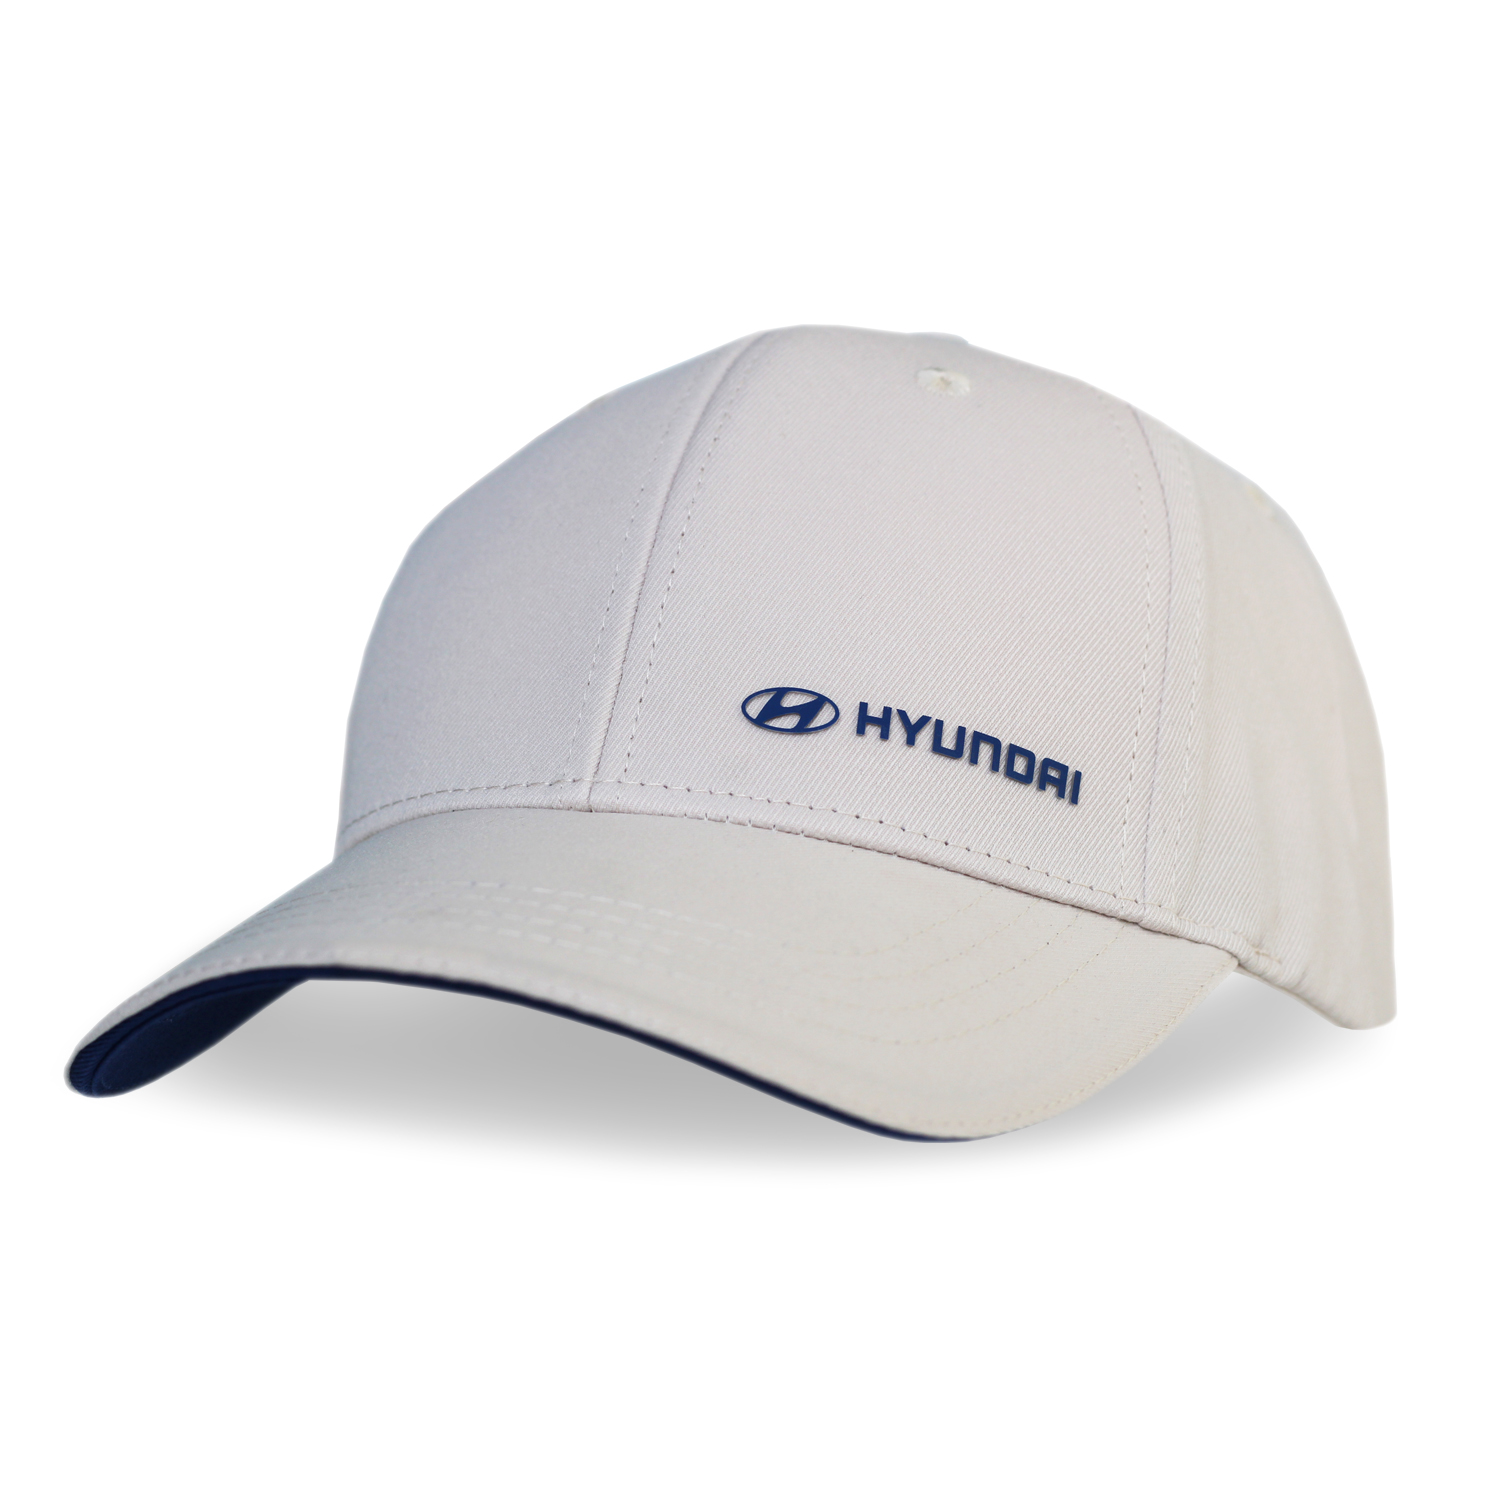 Hyundai Merchandising Shop